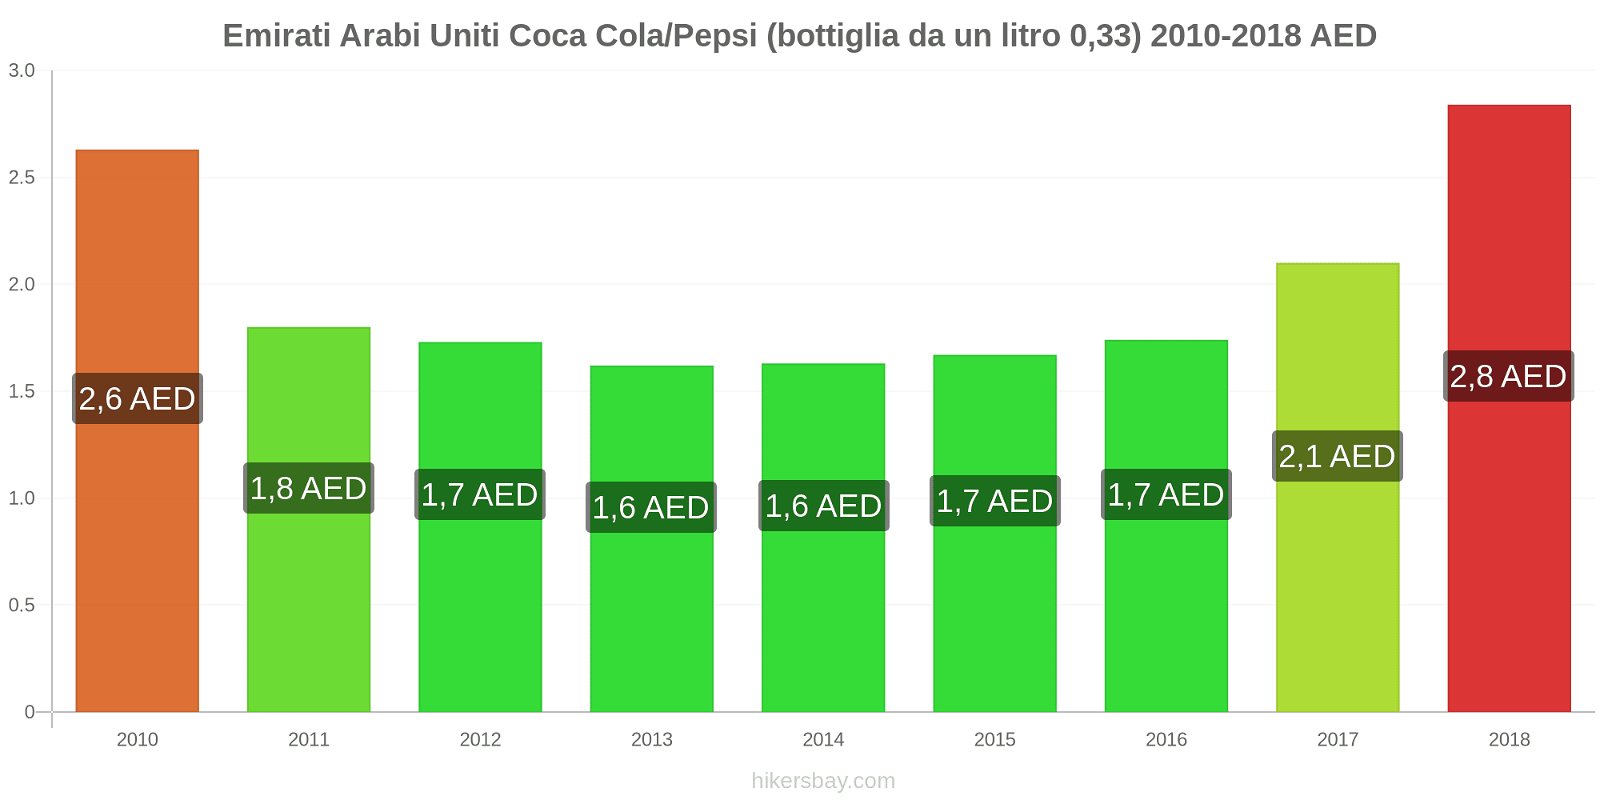 Emirati Arabi Uniti cambi di prezzo Coca-Cola/Pepsi (bottiglia da 0.33 litri) hikersbay.com